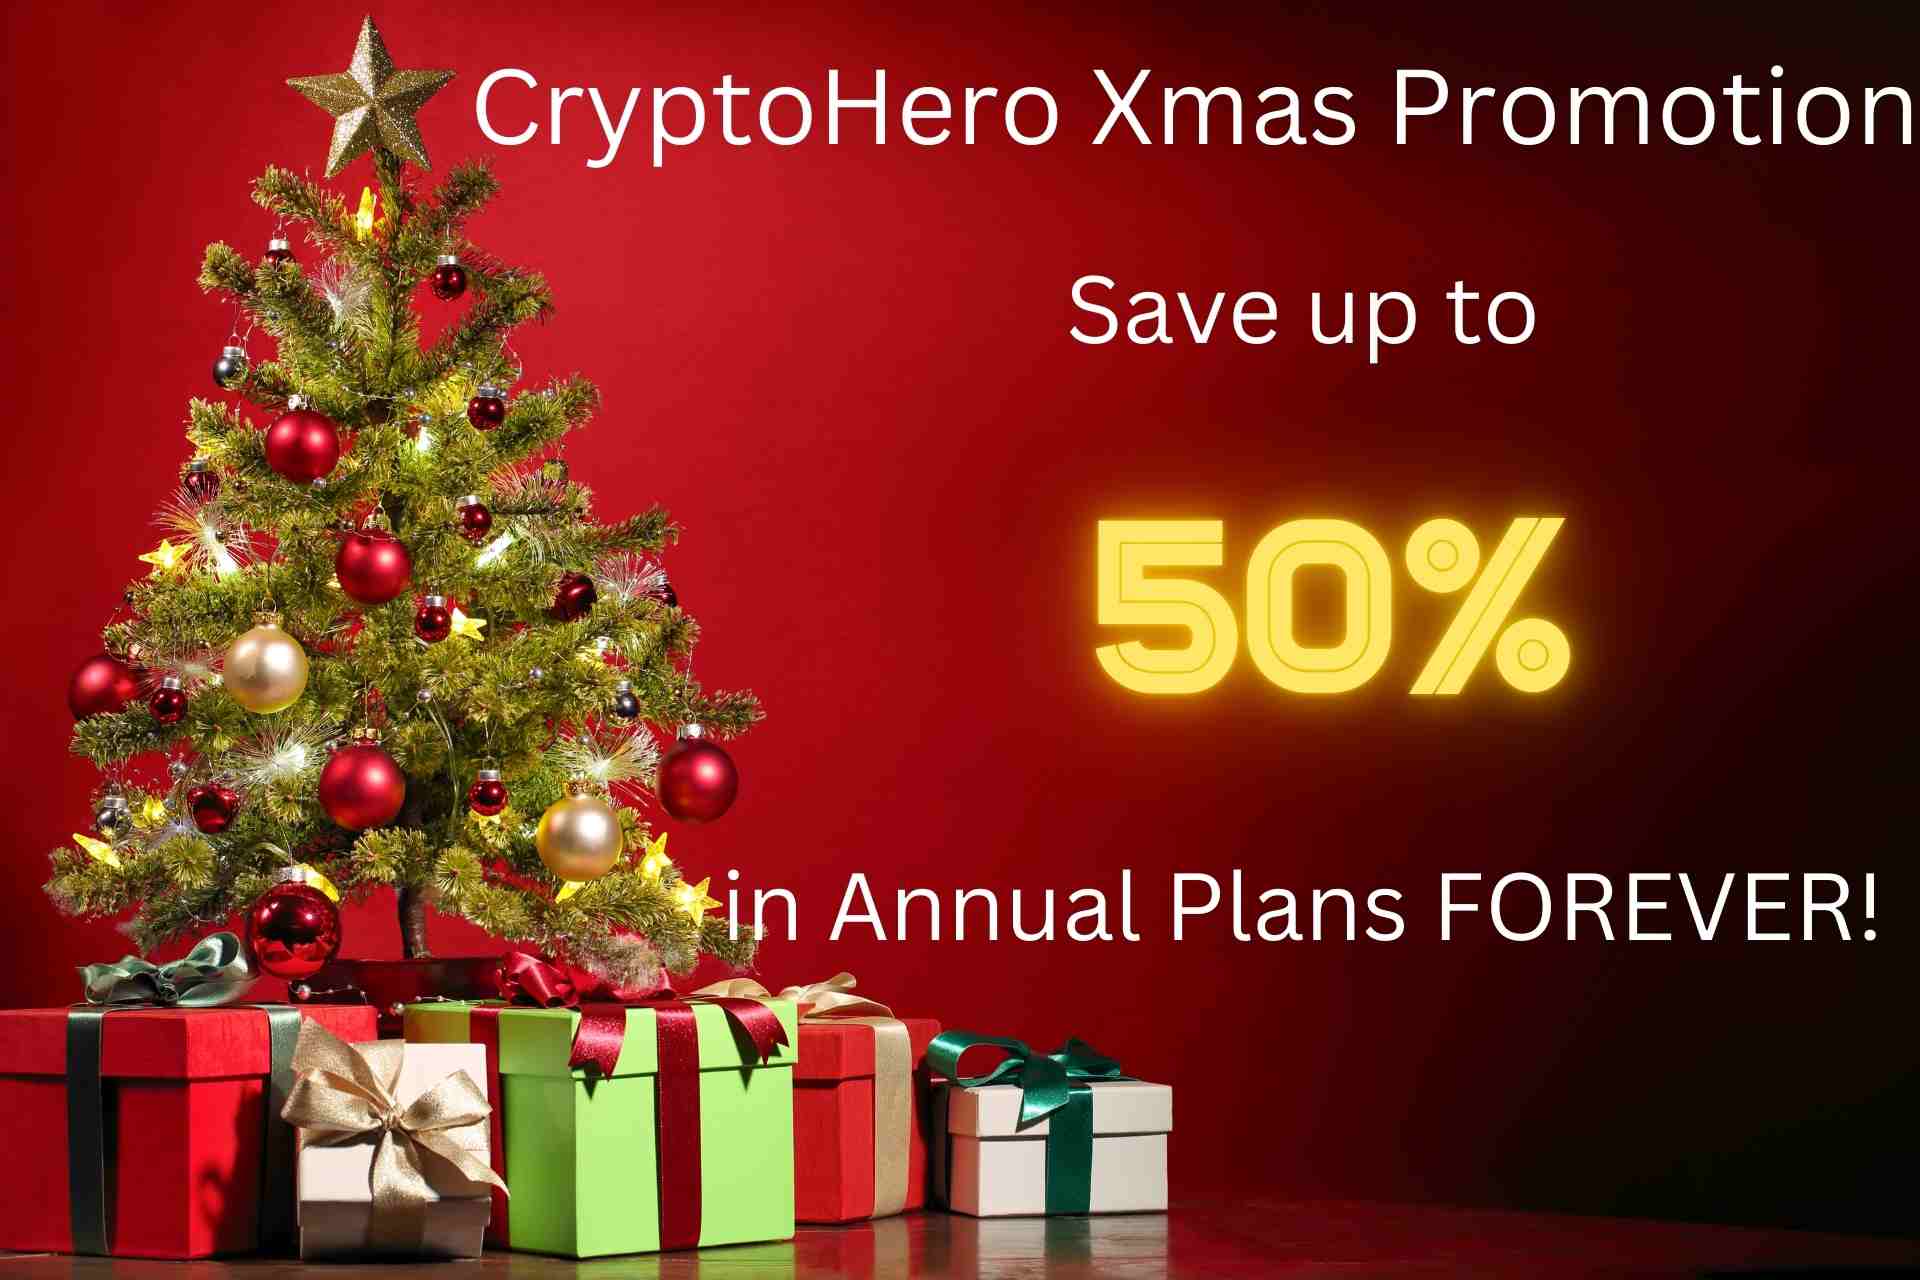 CryptoHero Xmas Promotion